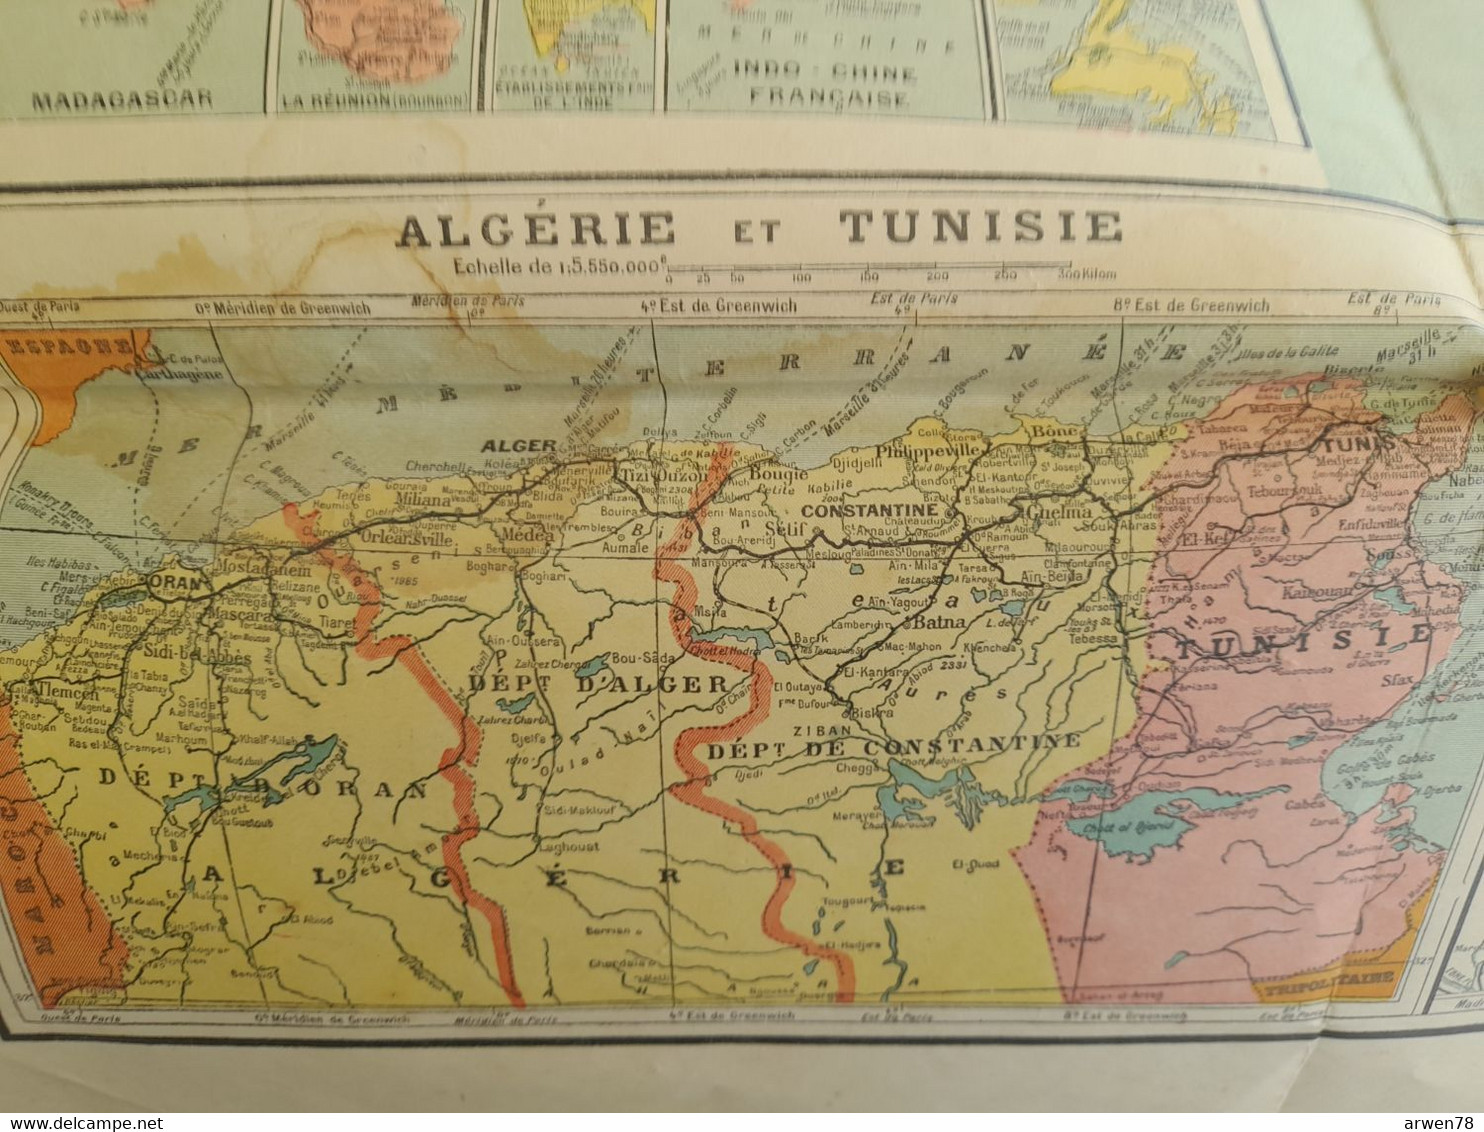 TARIDE FRANCE BELGIQUE BORDS DU RHIN SUISSE ALGERIE TUNISIE COLONIES FRANCAISES etc. Départements & chemins de fer